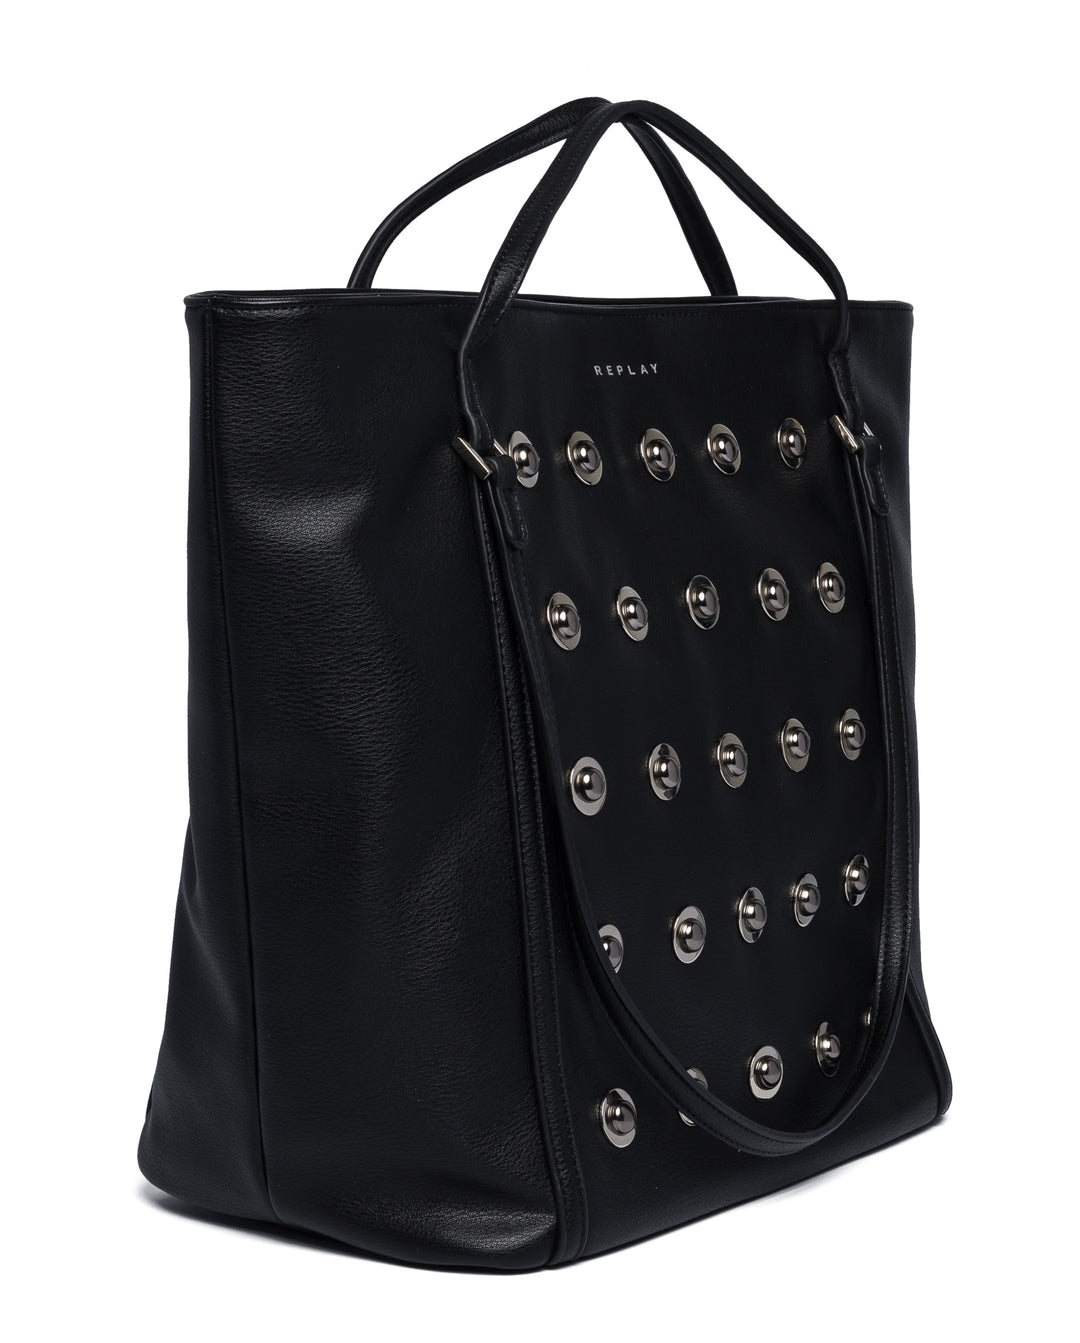 Replay FW3836.000 sac à main zippé pour femmes en cuir noir avec logo en métal